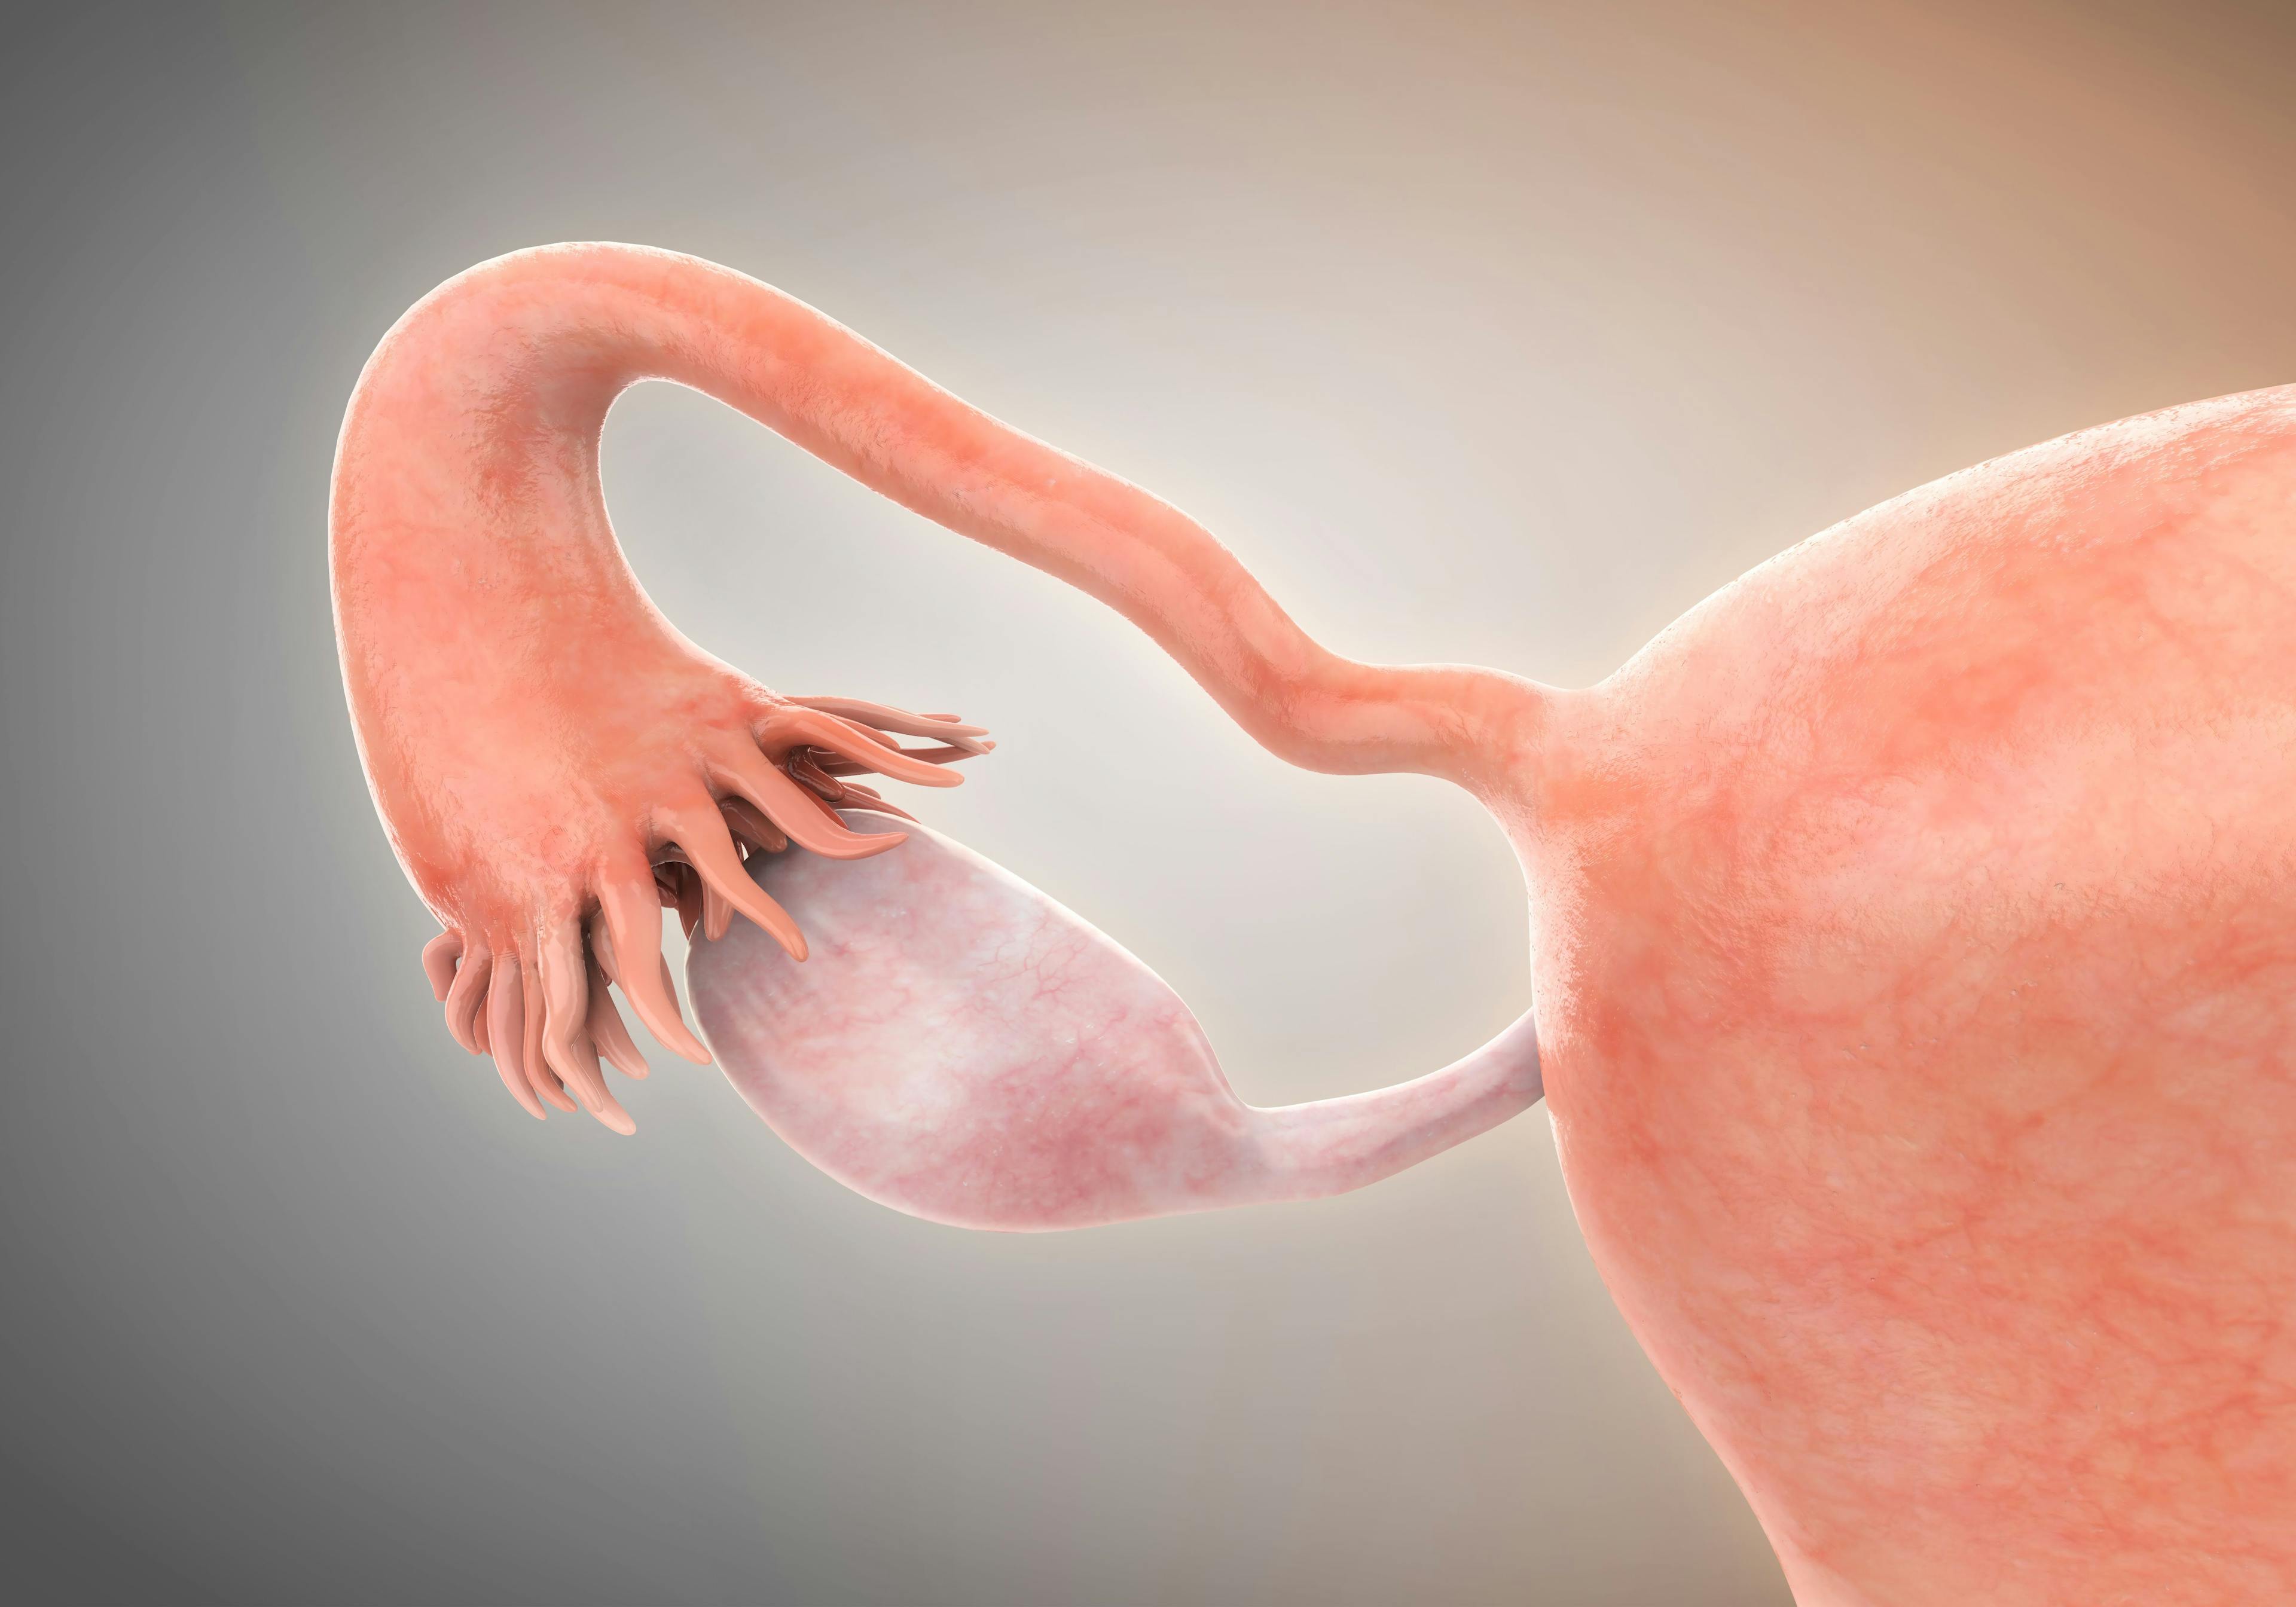 Female Reproductive System Anatomy | Image Credit: nerthuz – stock.adobe.com